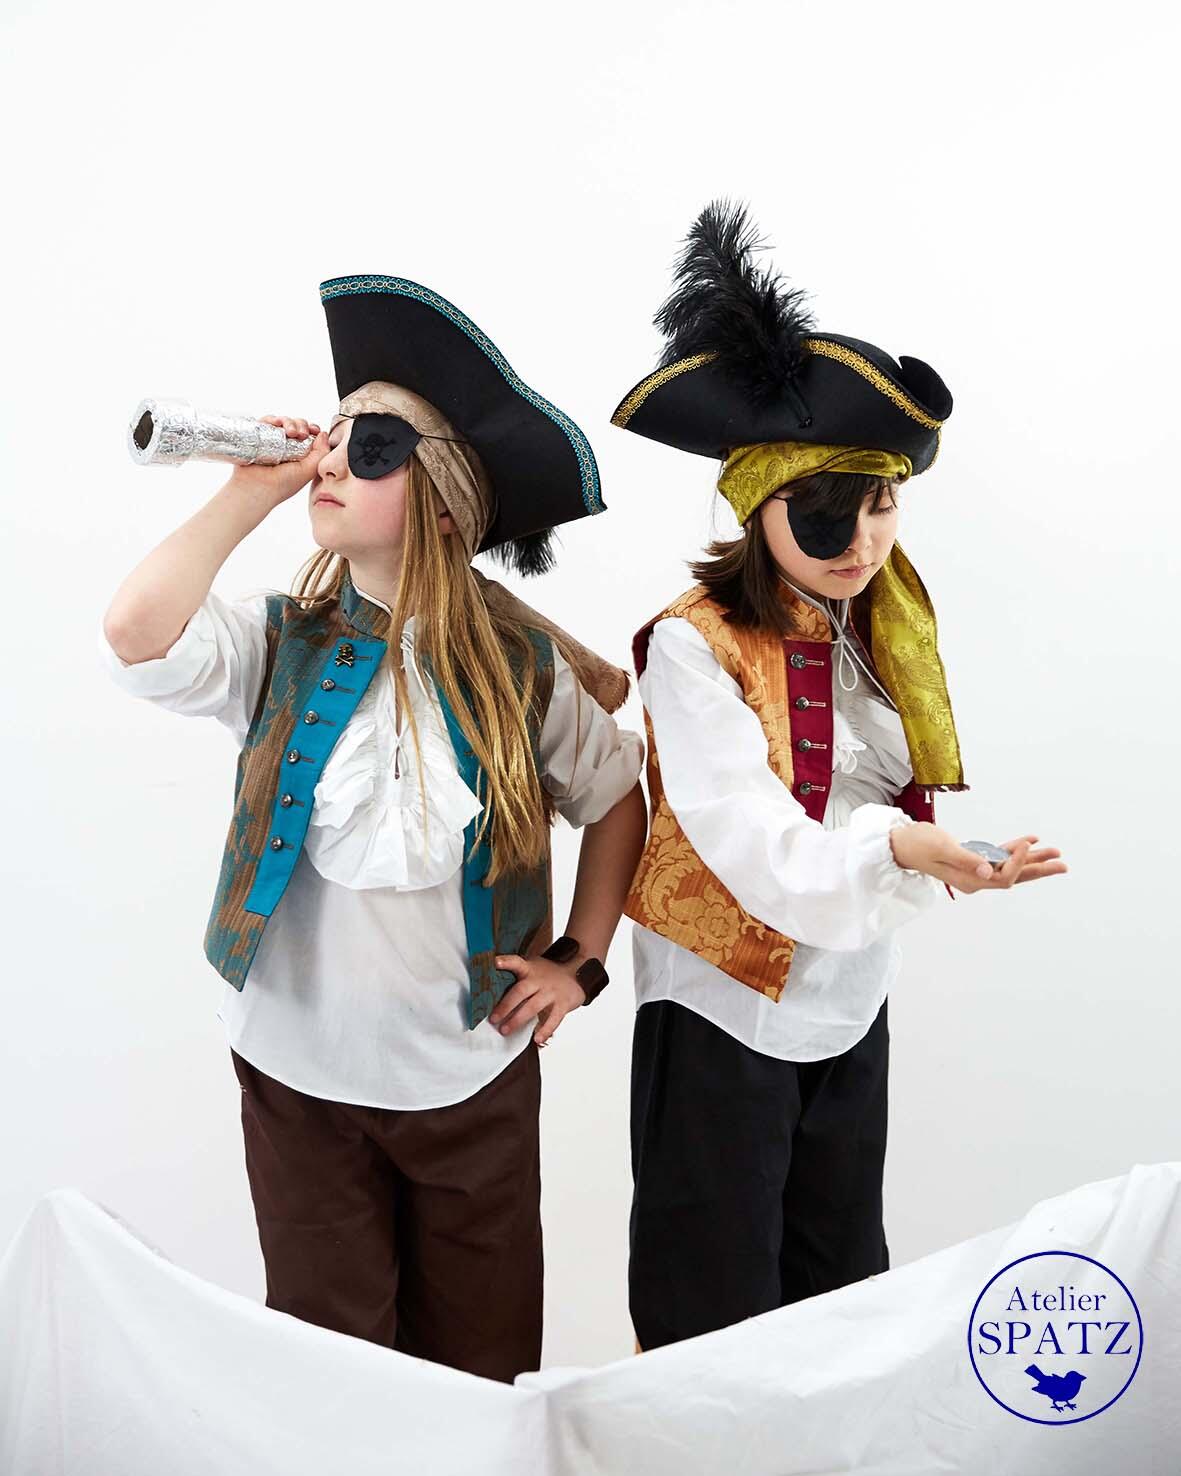 Costume de pirate pour les petits pirates au carnaval et pour les anniversaires